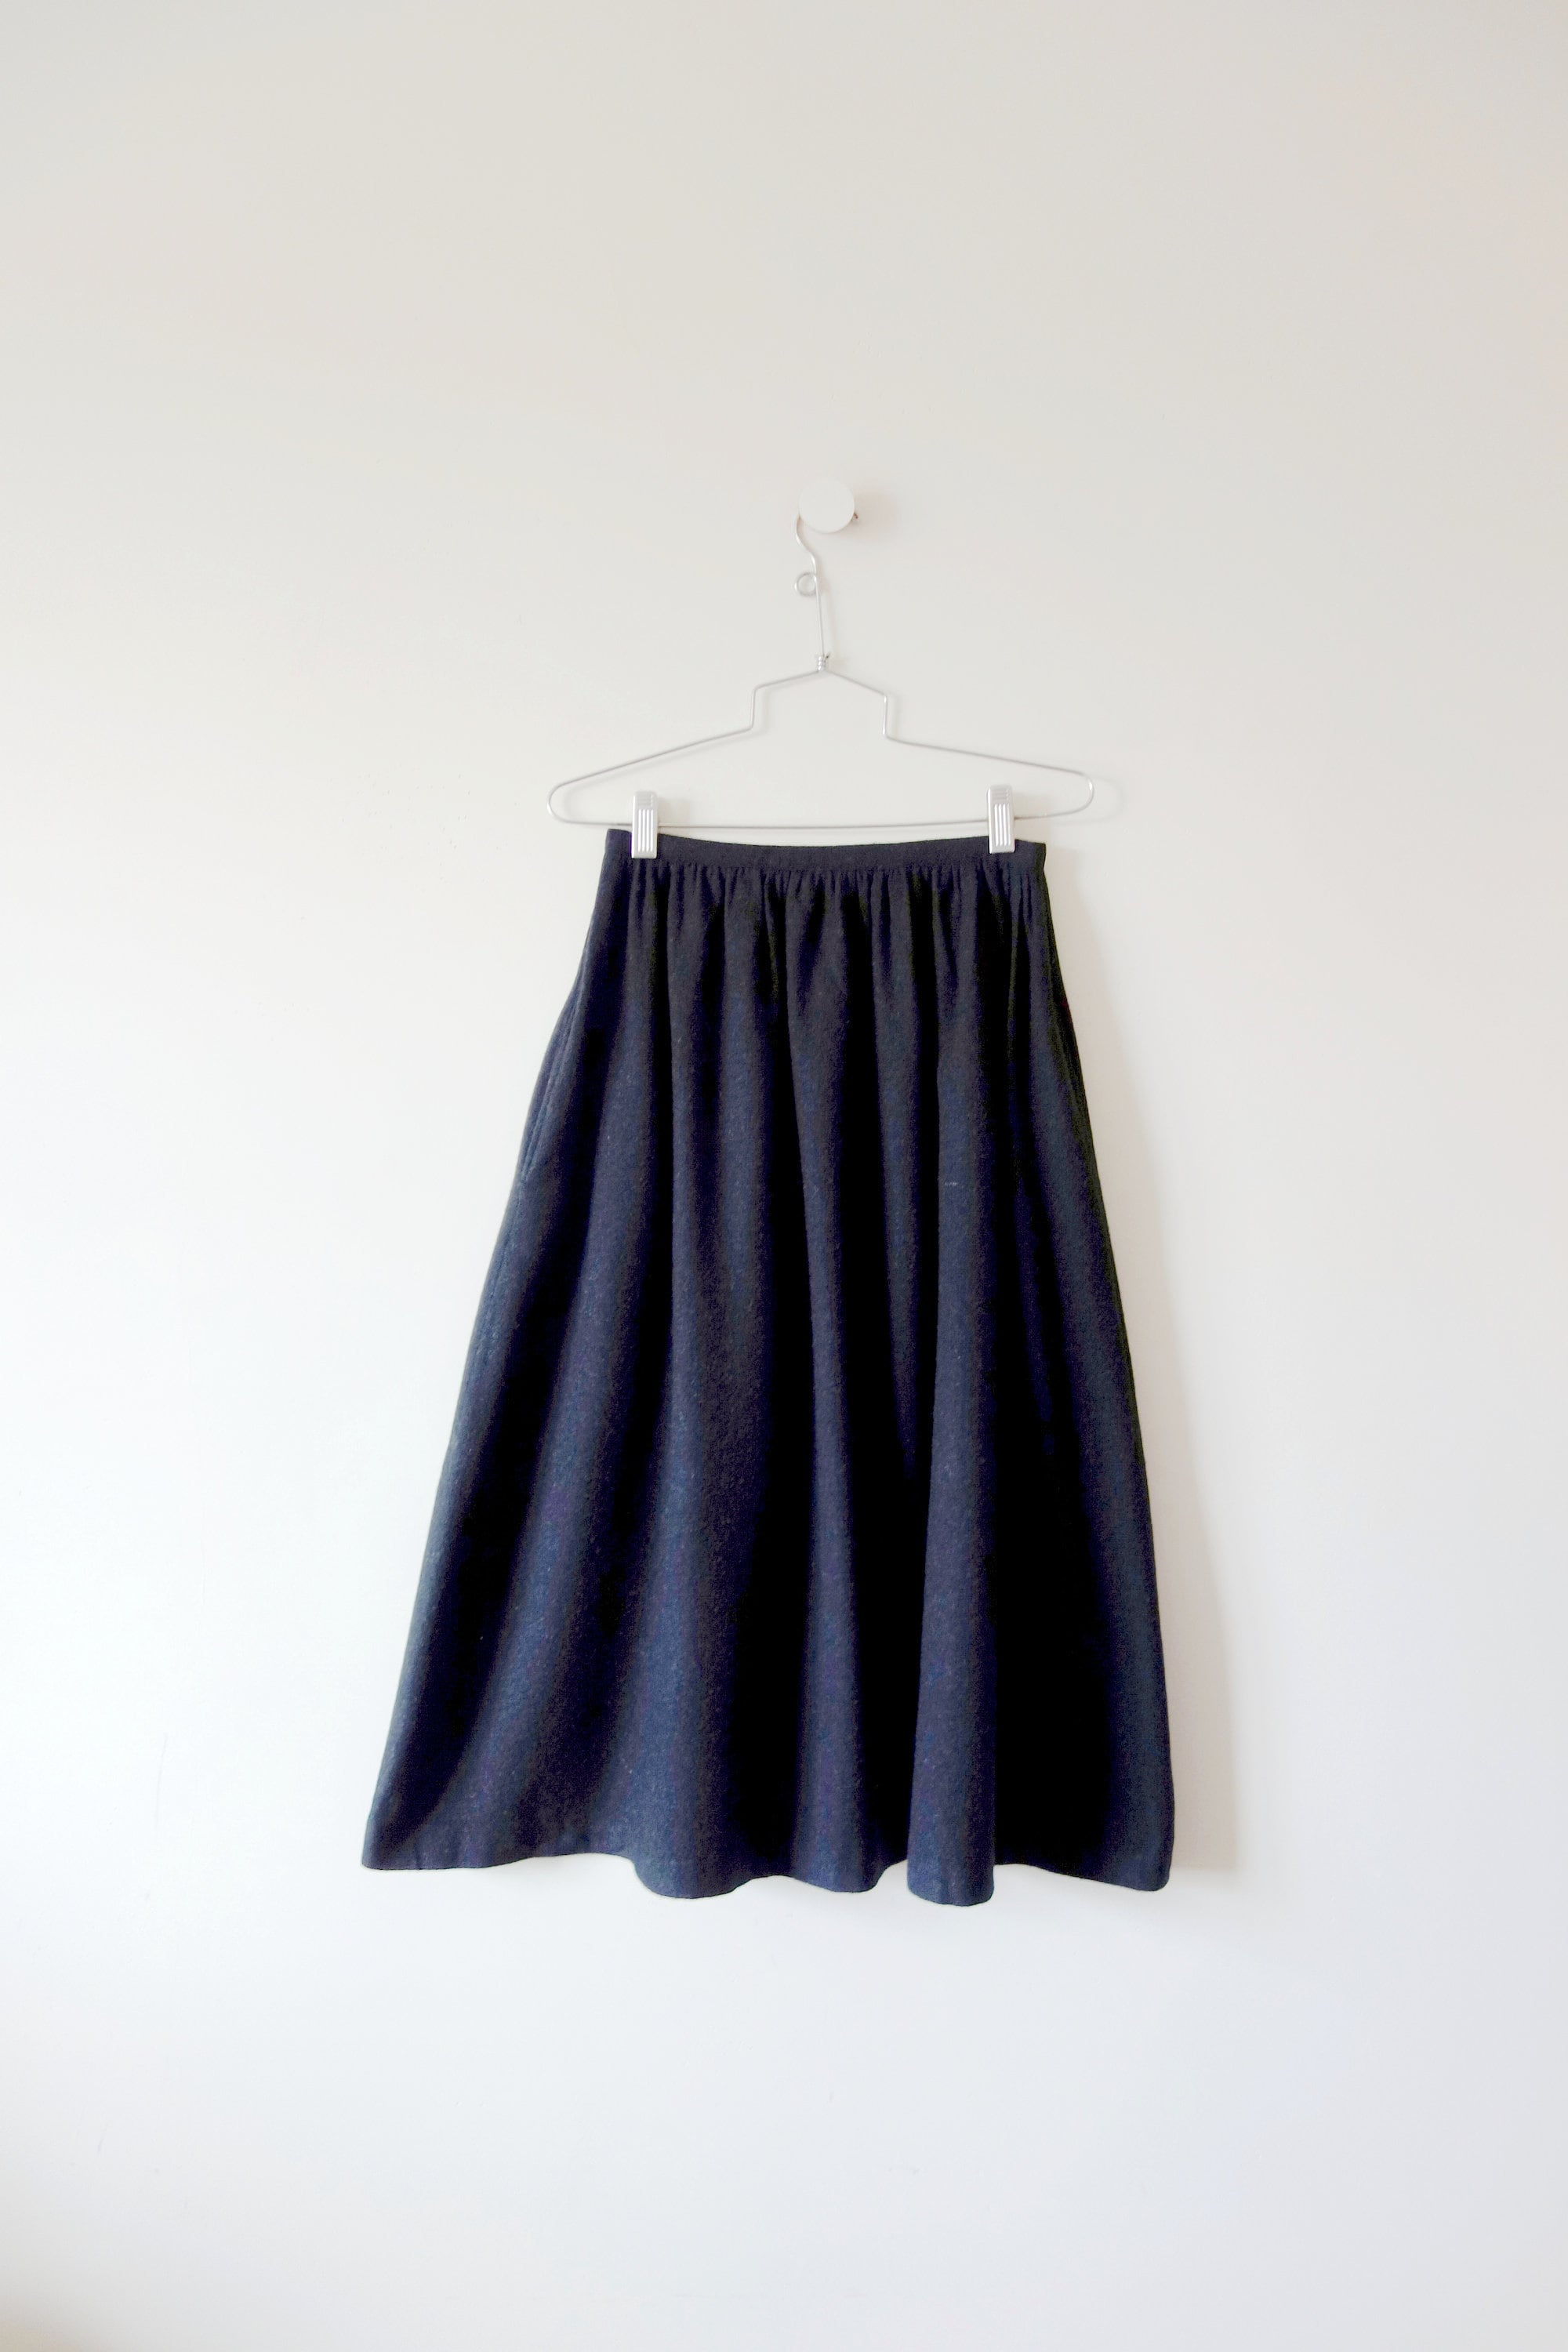 1970s Black Wool Full Skirt - Etsy